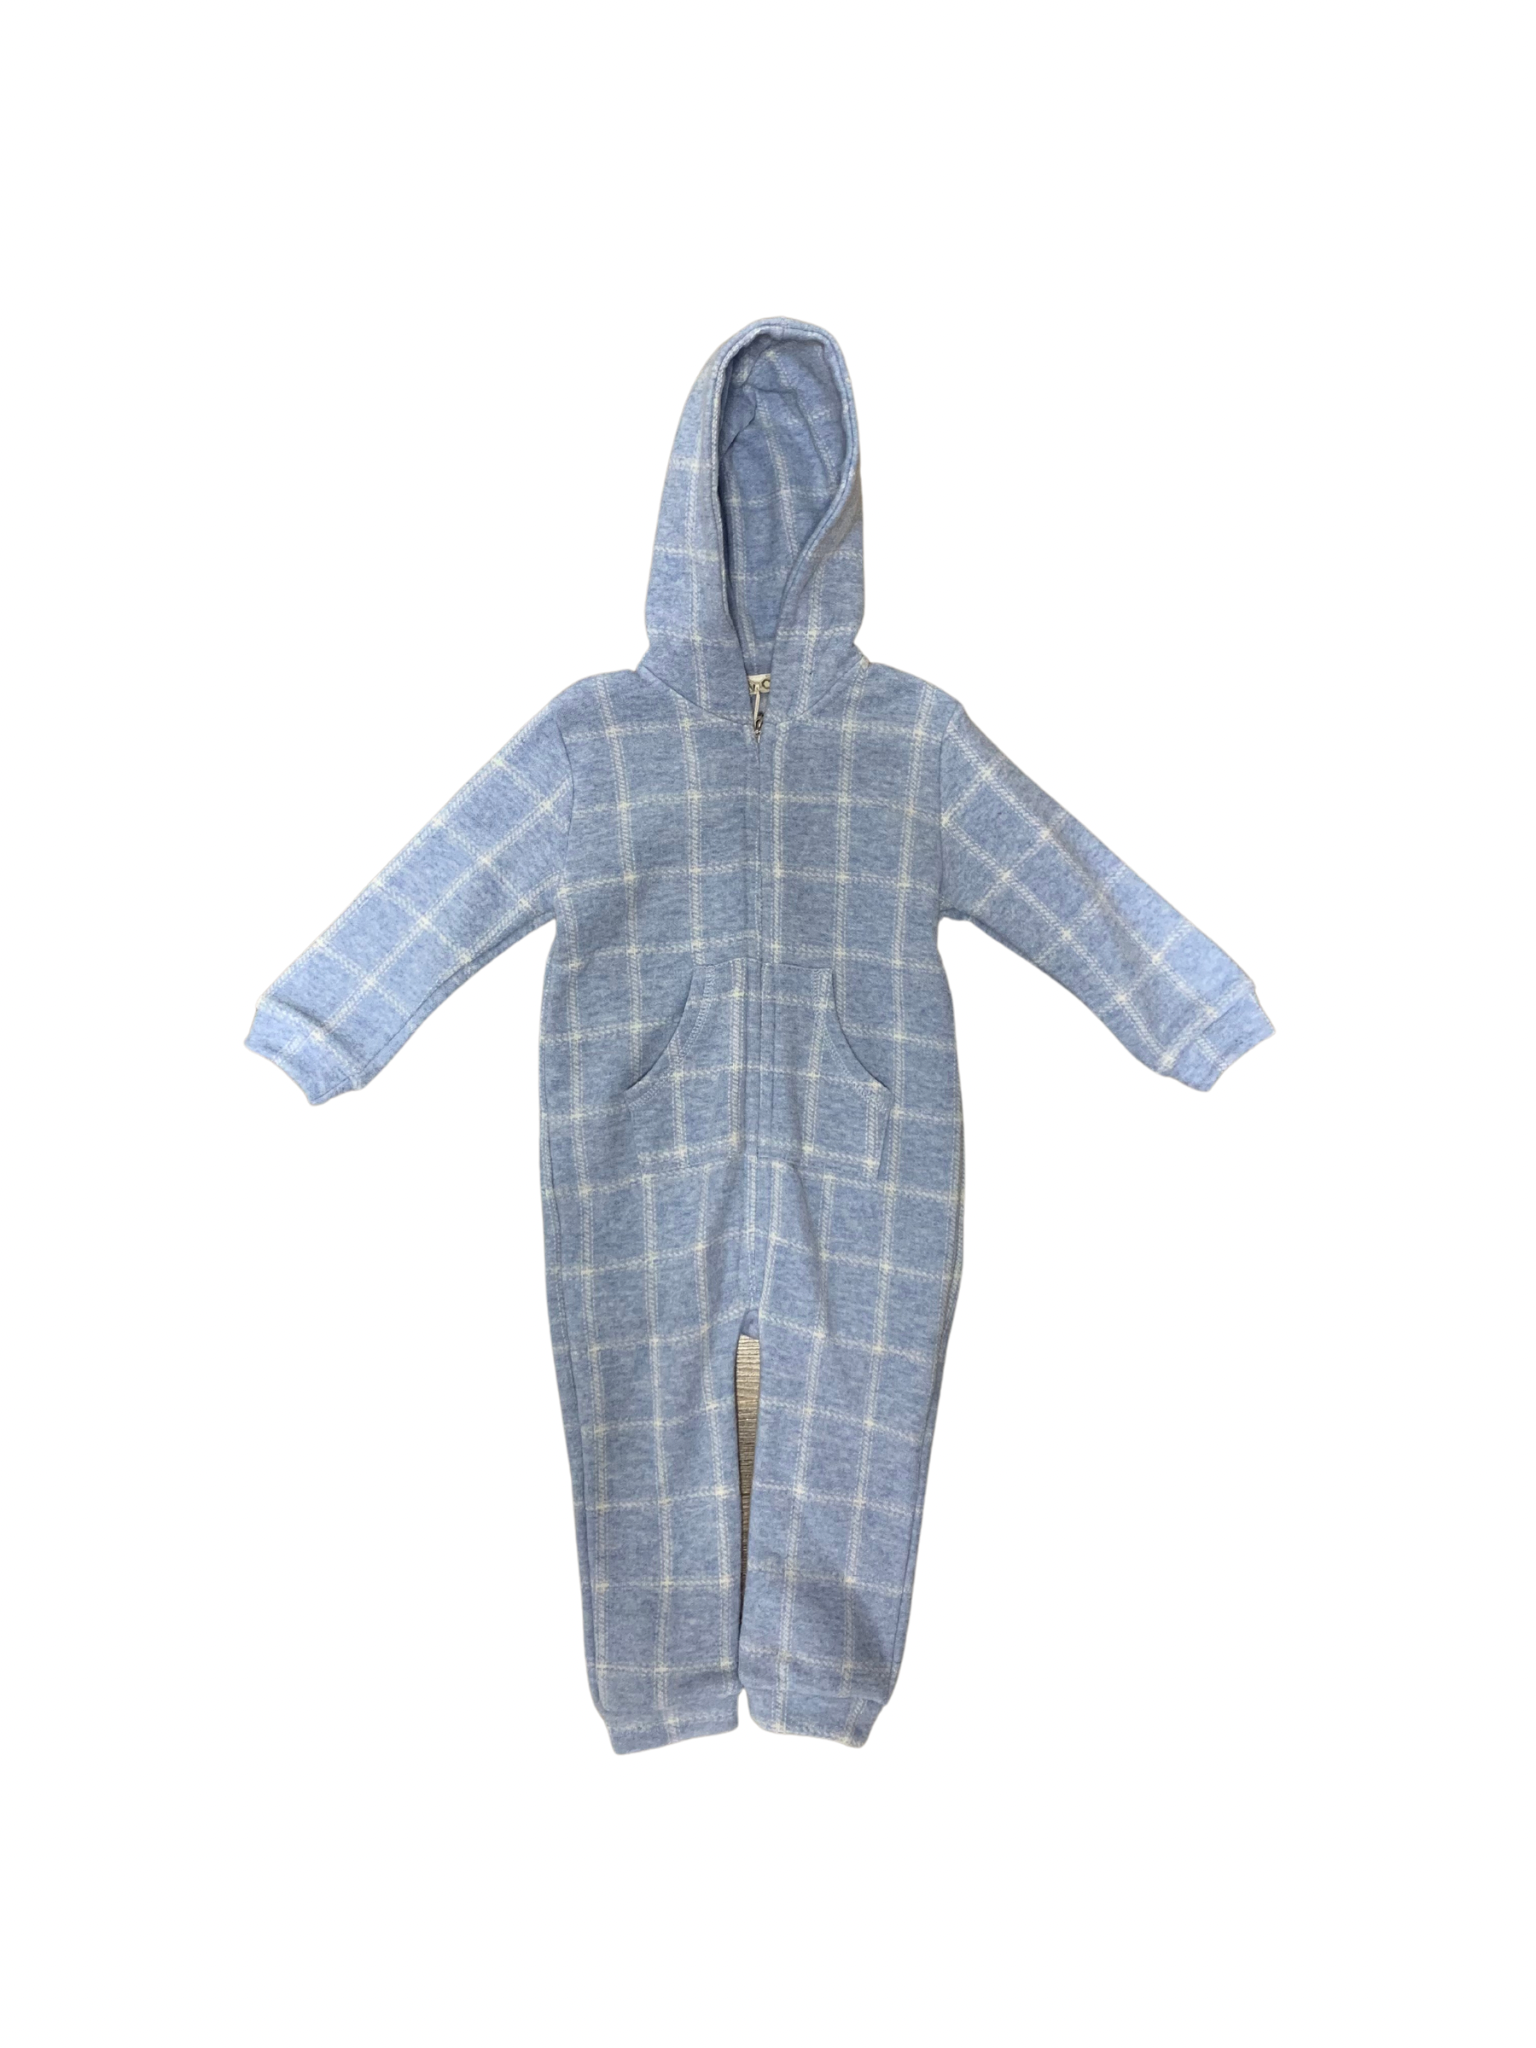 EMC - Pyjama 1 pièce bleu pâle, 9 mois